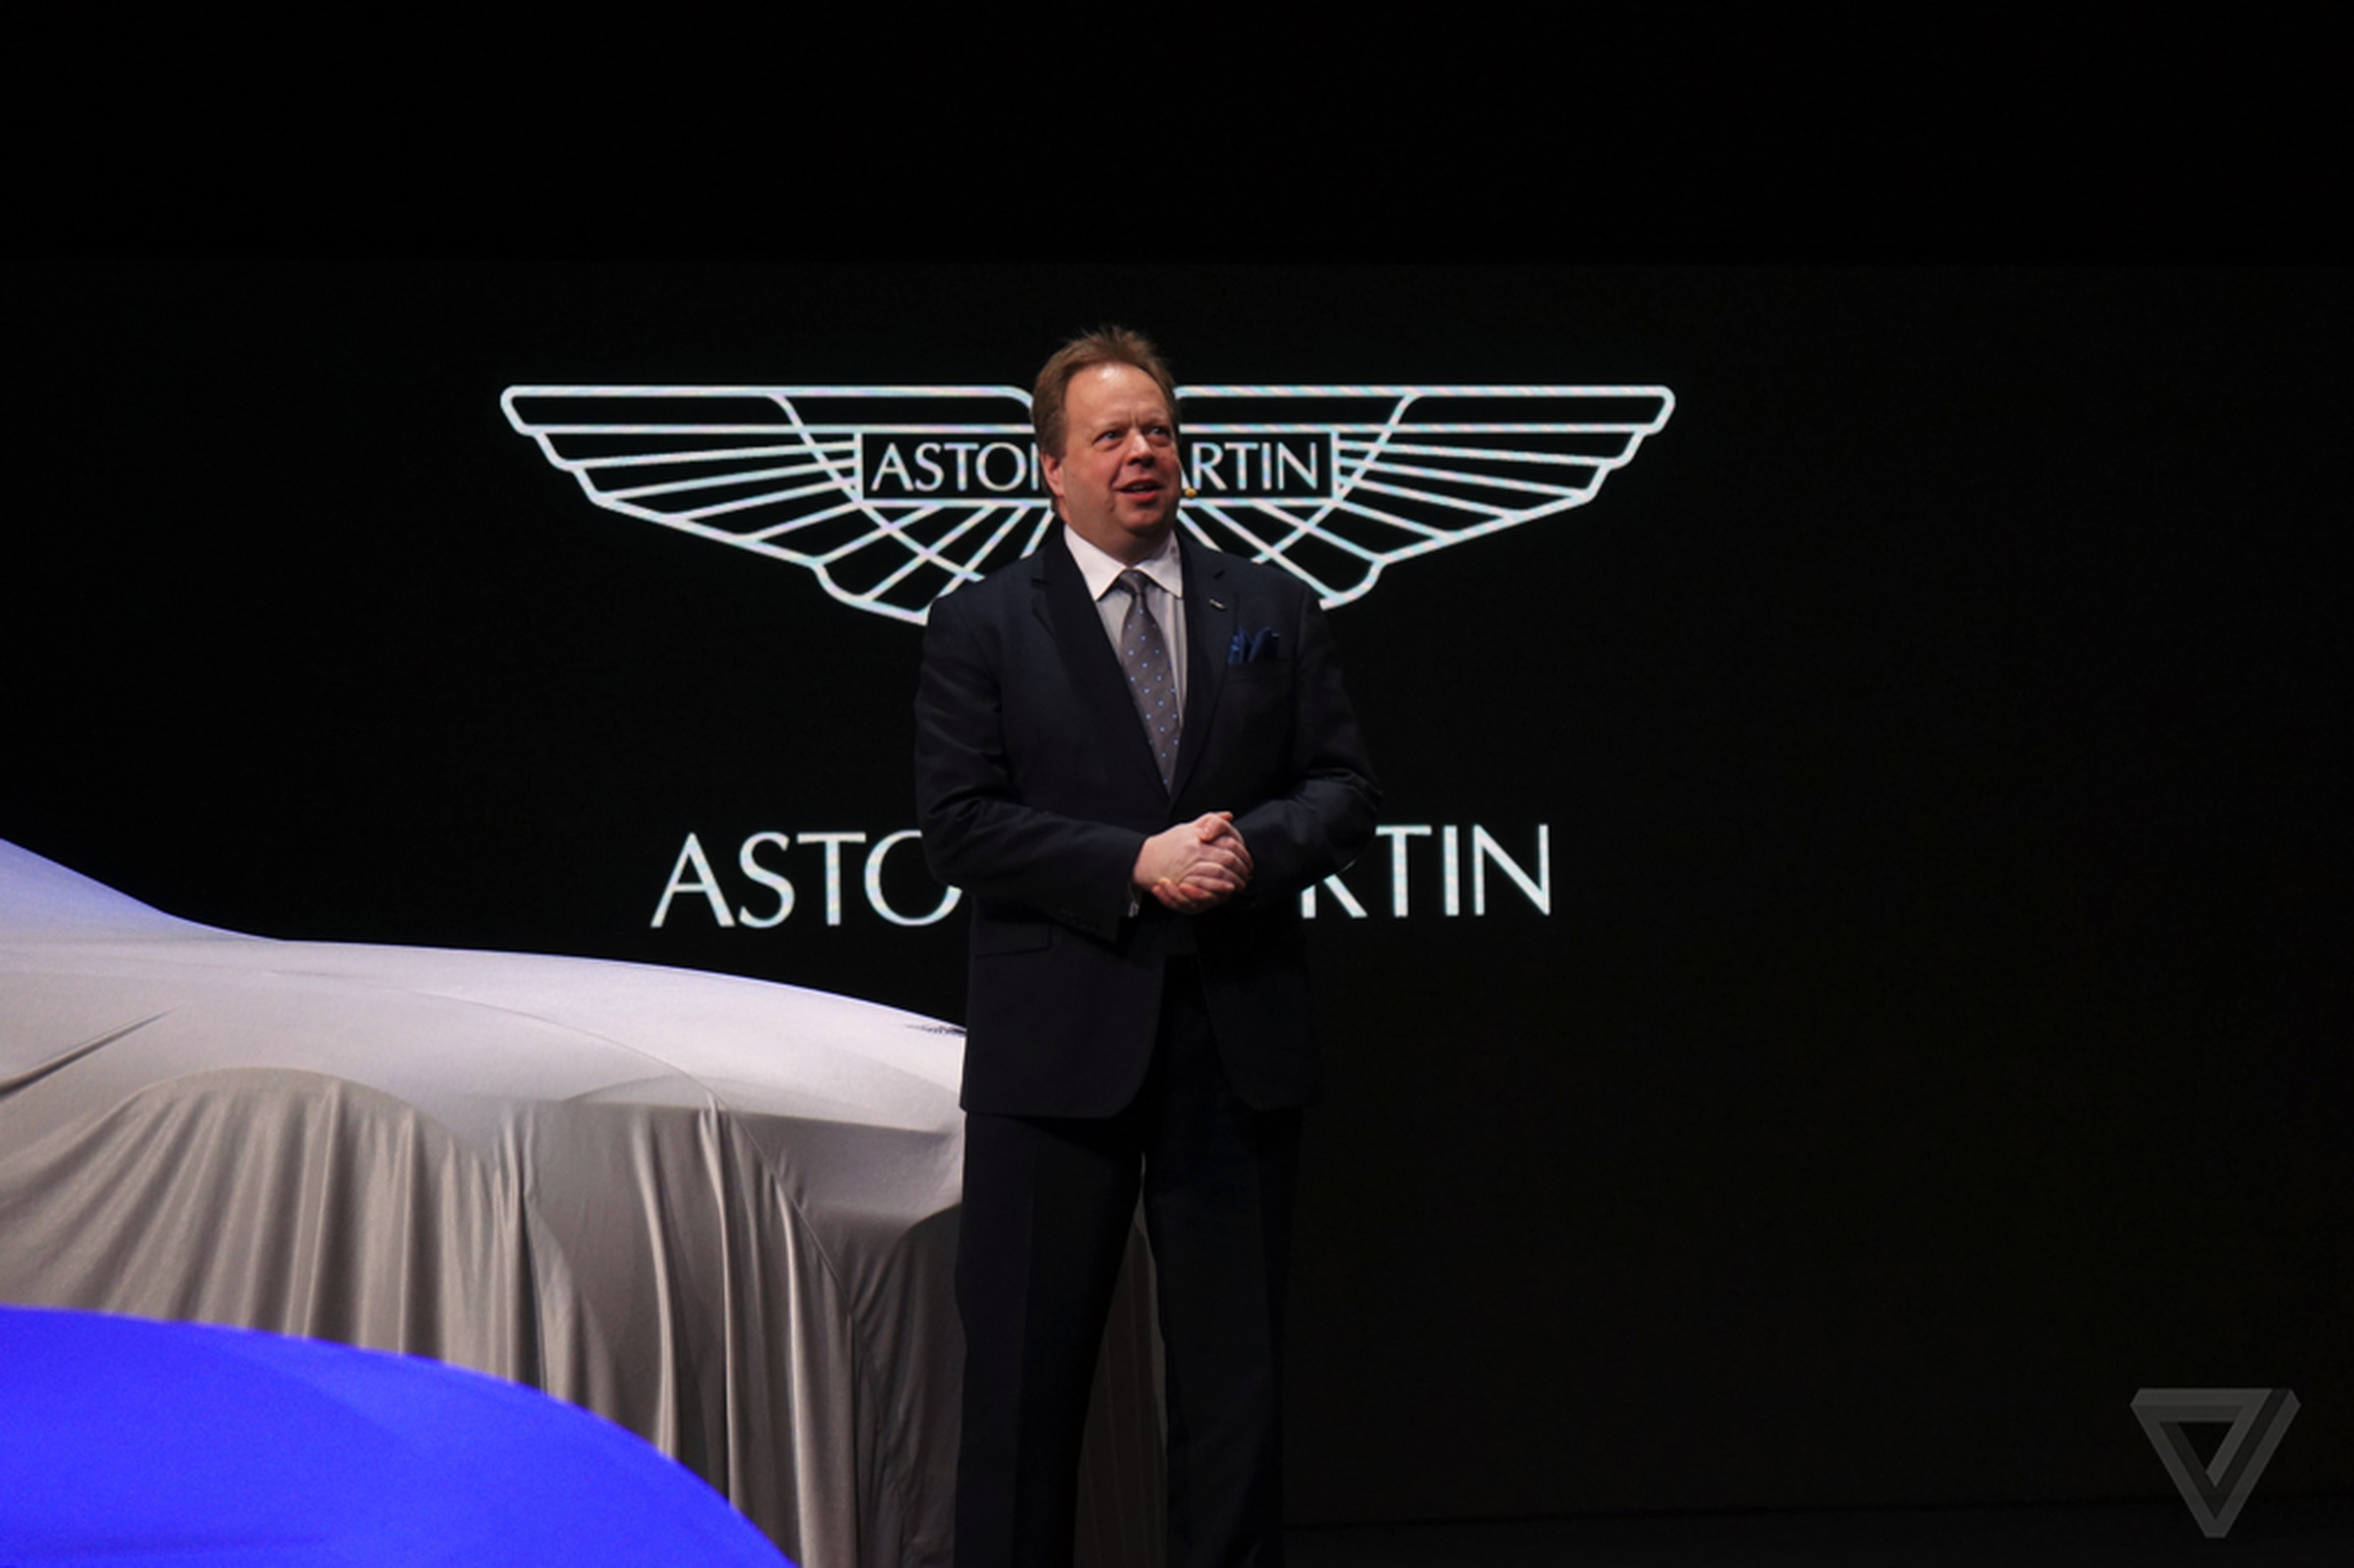 Aston Martin CEO Andy Palmer